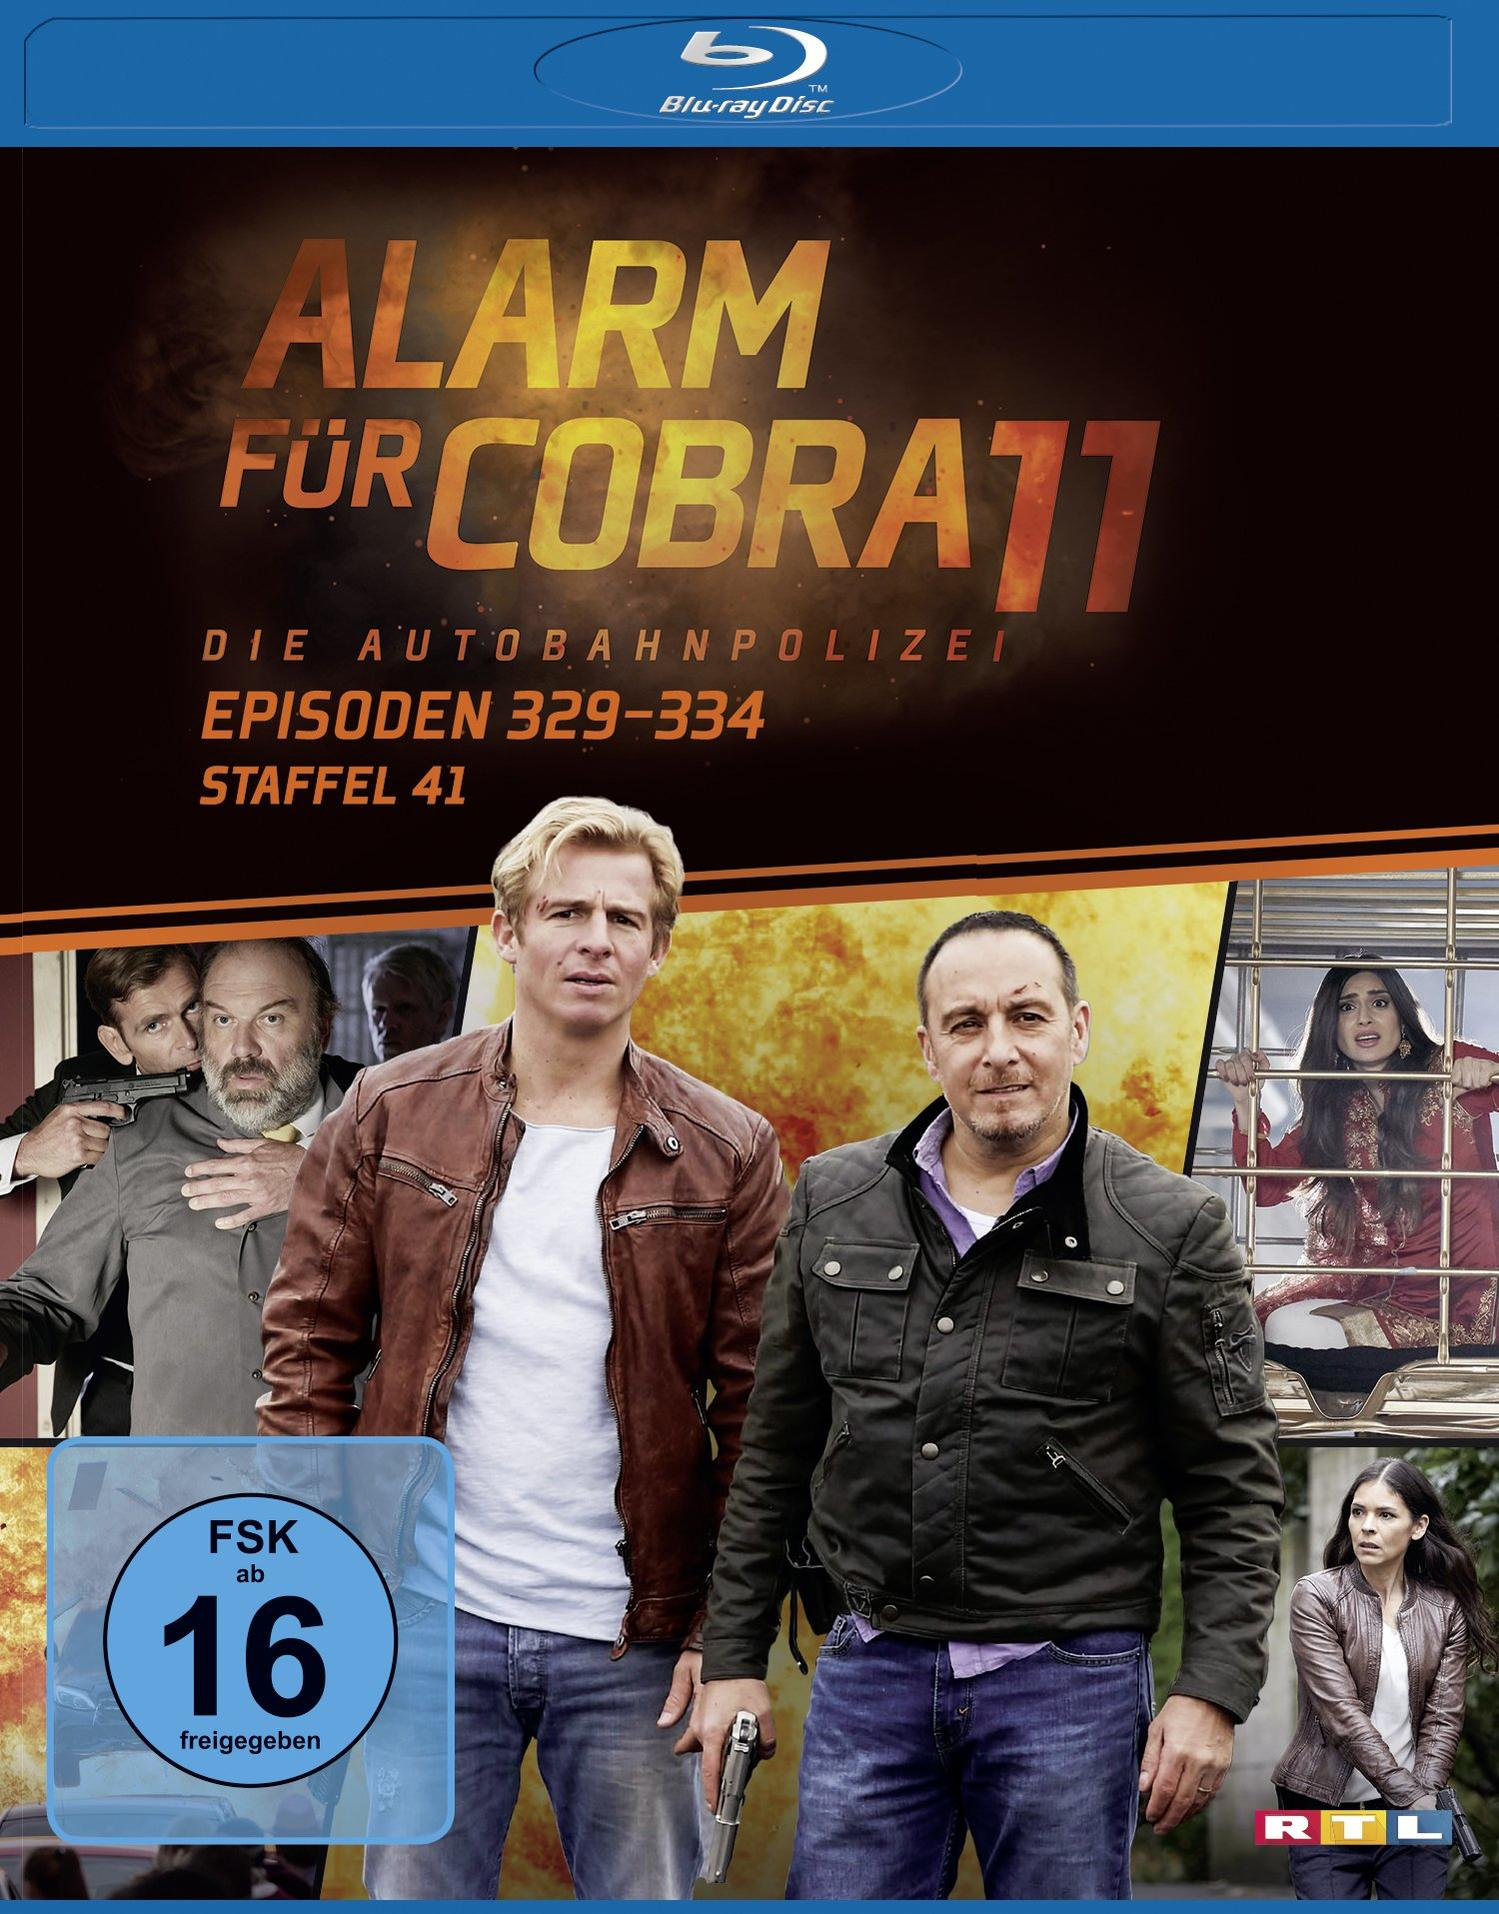 - Cobra für Staffel 41 Alarm Blu-ray 11